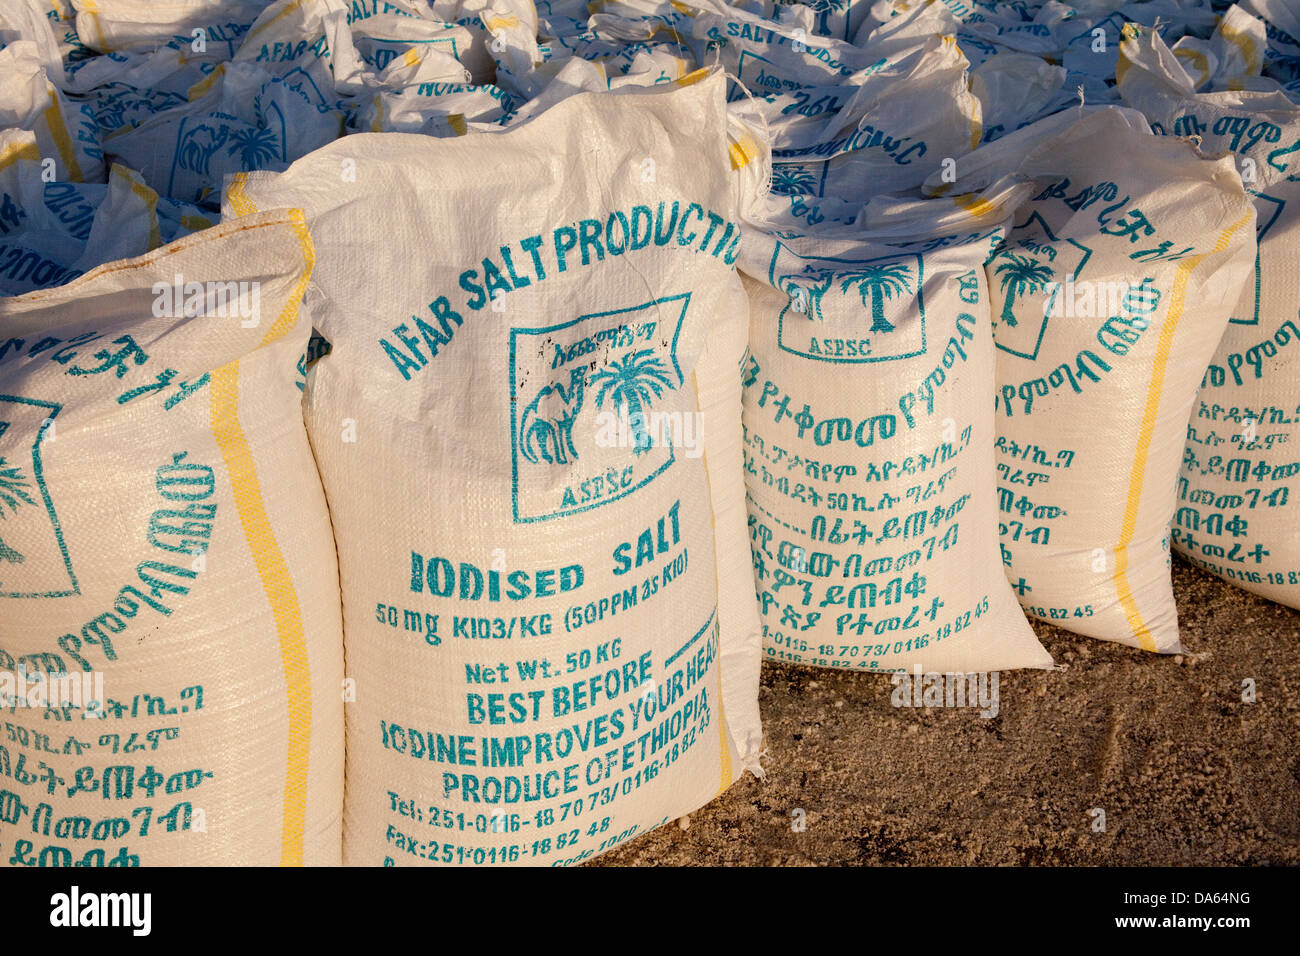 La producción de sal,,, el lago Afrera saltwork, África, sal, Etiopía, bolsas Foto de stock